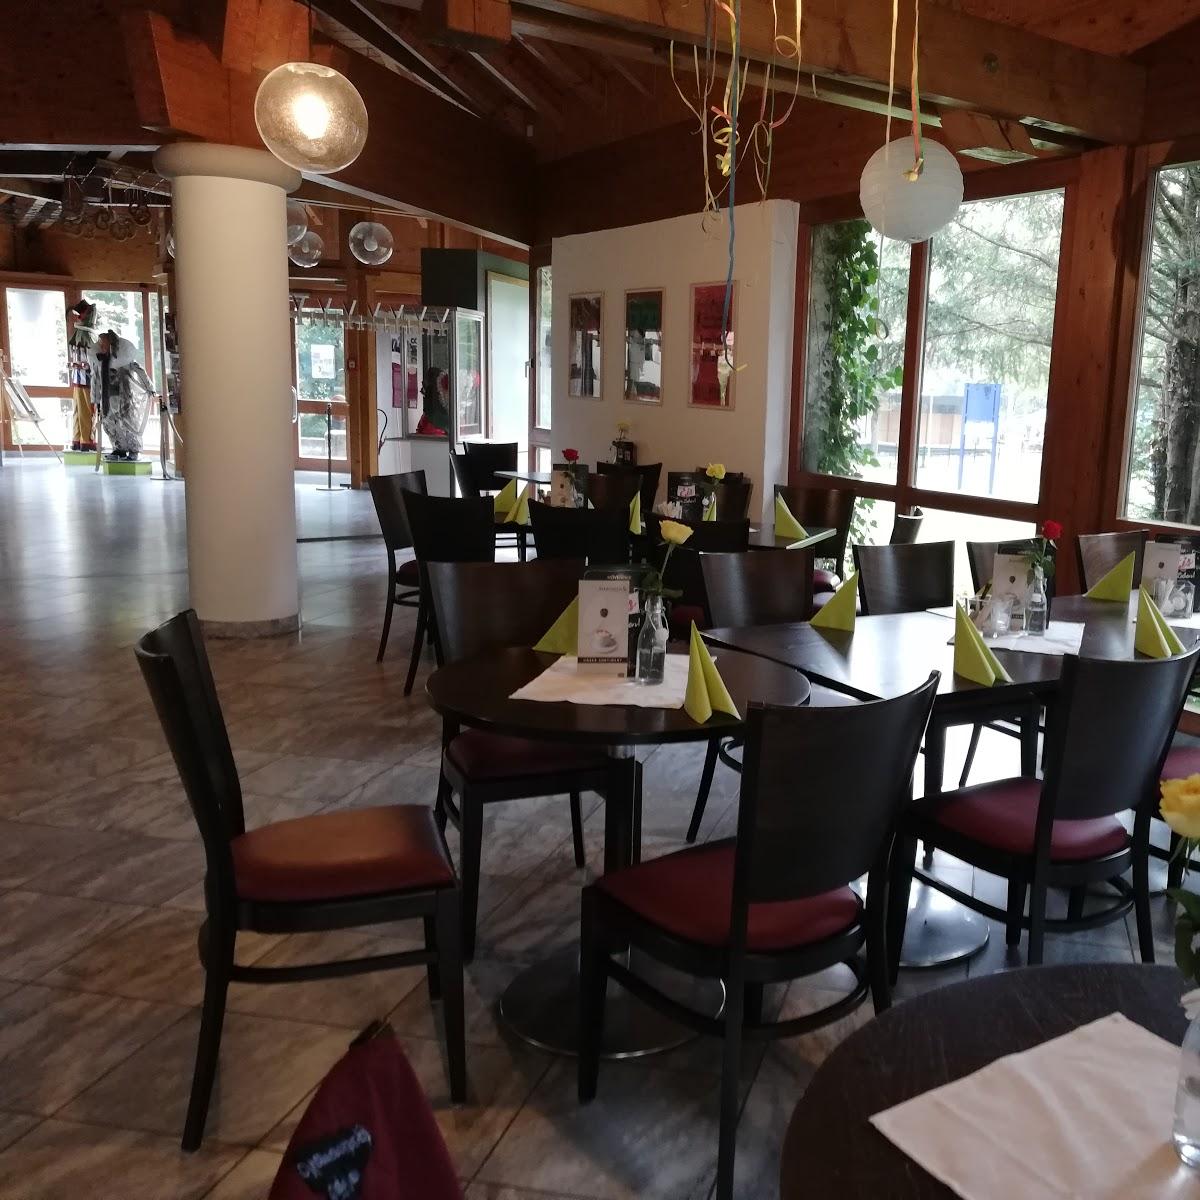 Restaurant "Cafe im Narrenschopf" in Bad Dürrheim